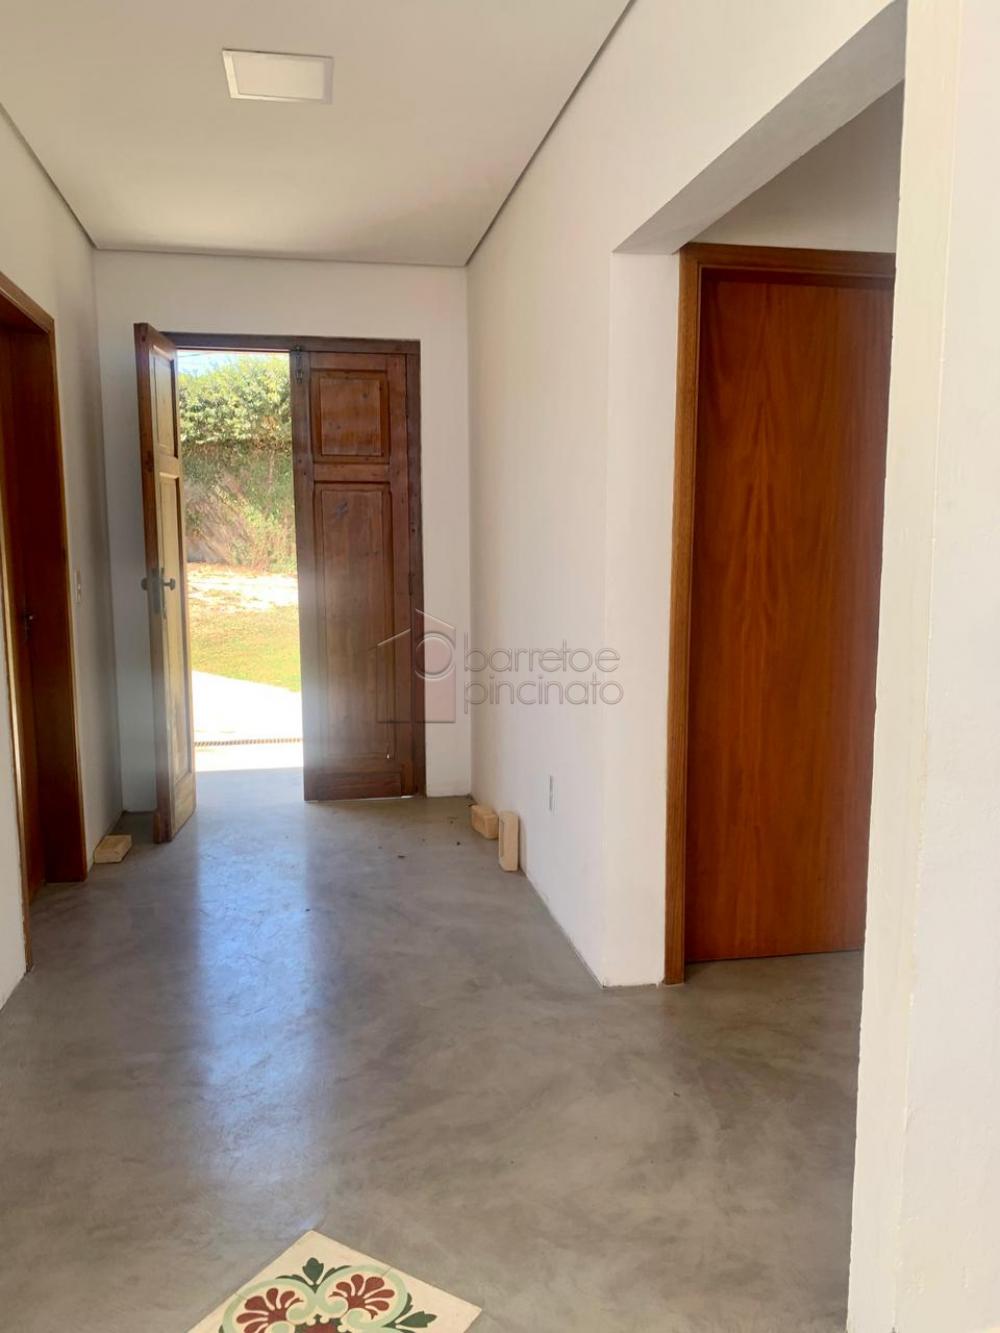 Comprar Chácara / Residencial em Jundiaí R$ 2.500.000,00 - Foto 45